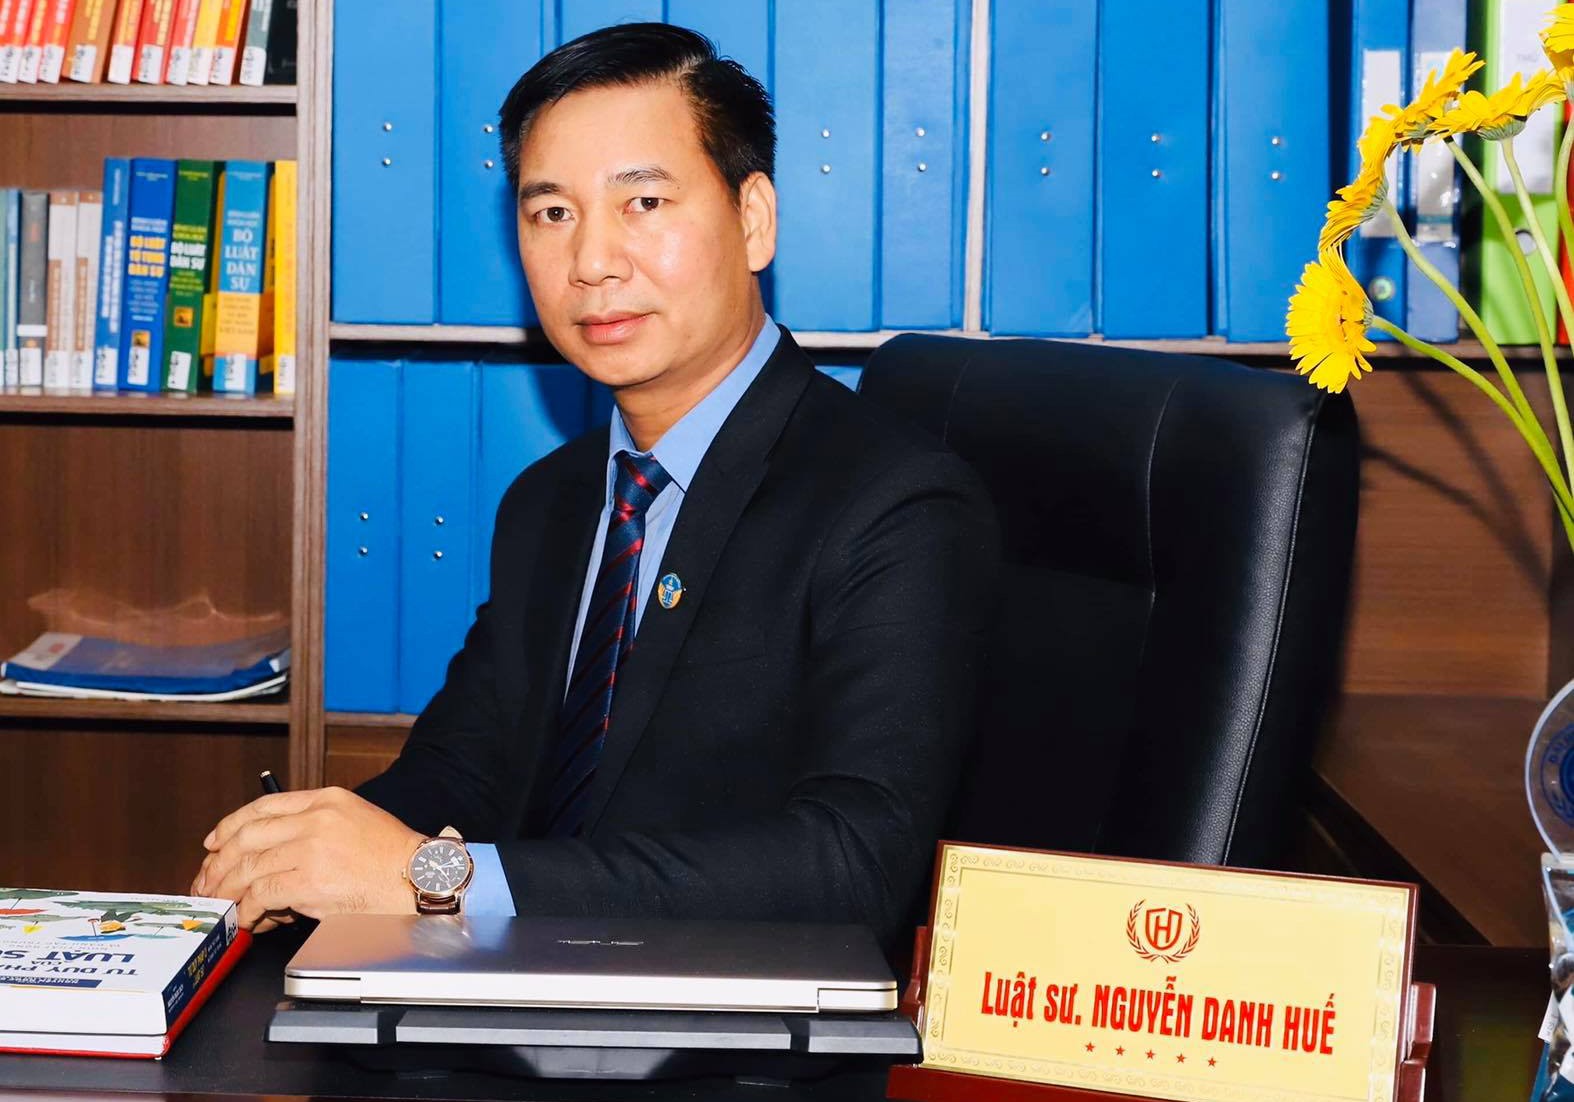 Luật sư Nguyễn Danh Huế. Ảnh: NVCC.